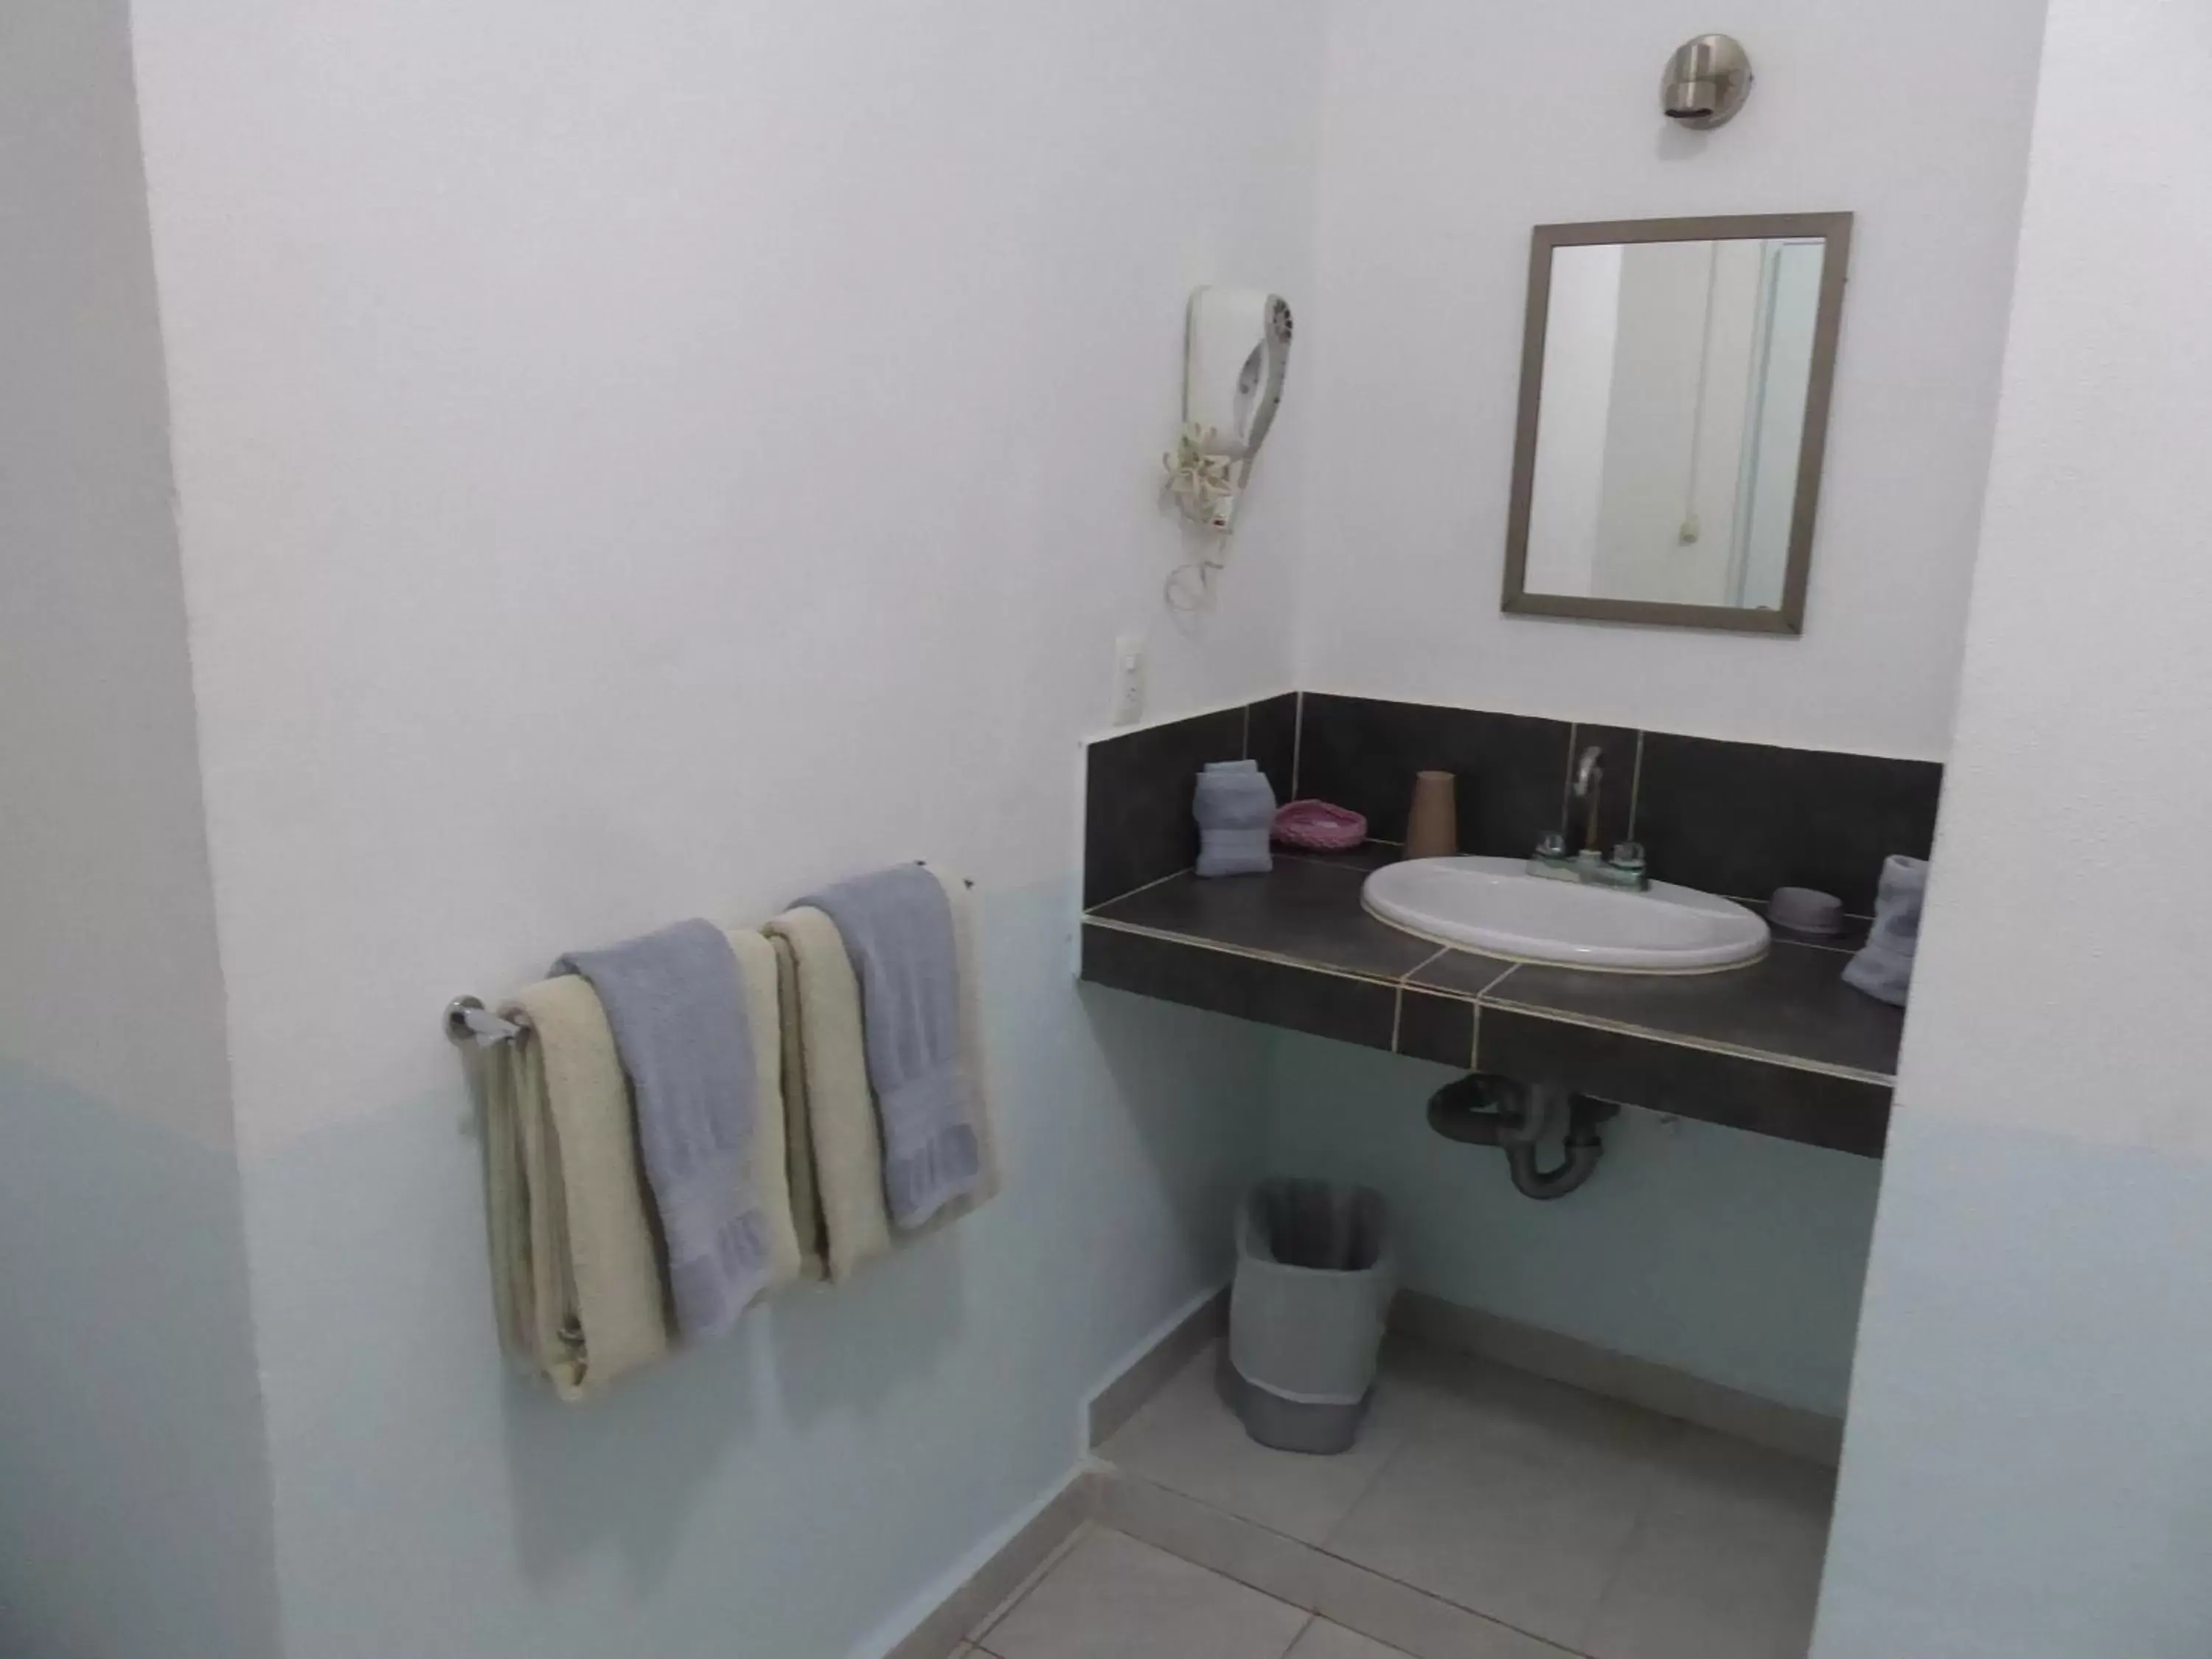 Bathroom in Claro de Luna